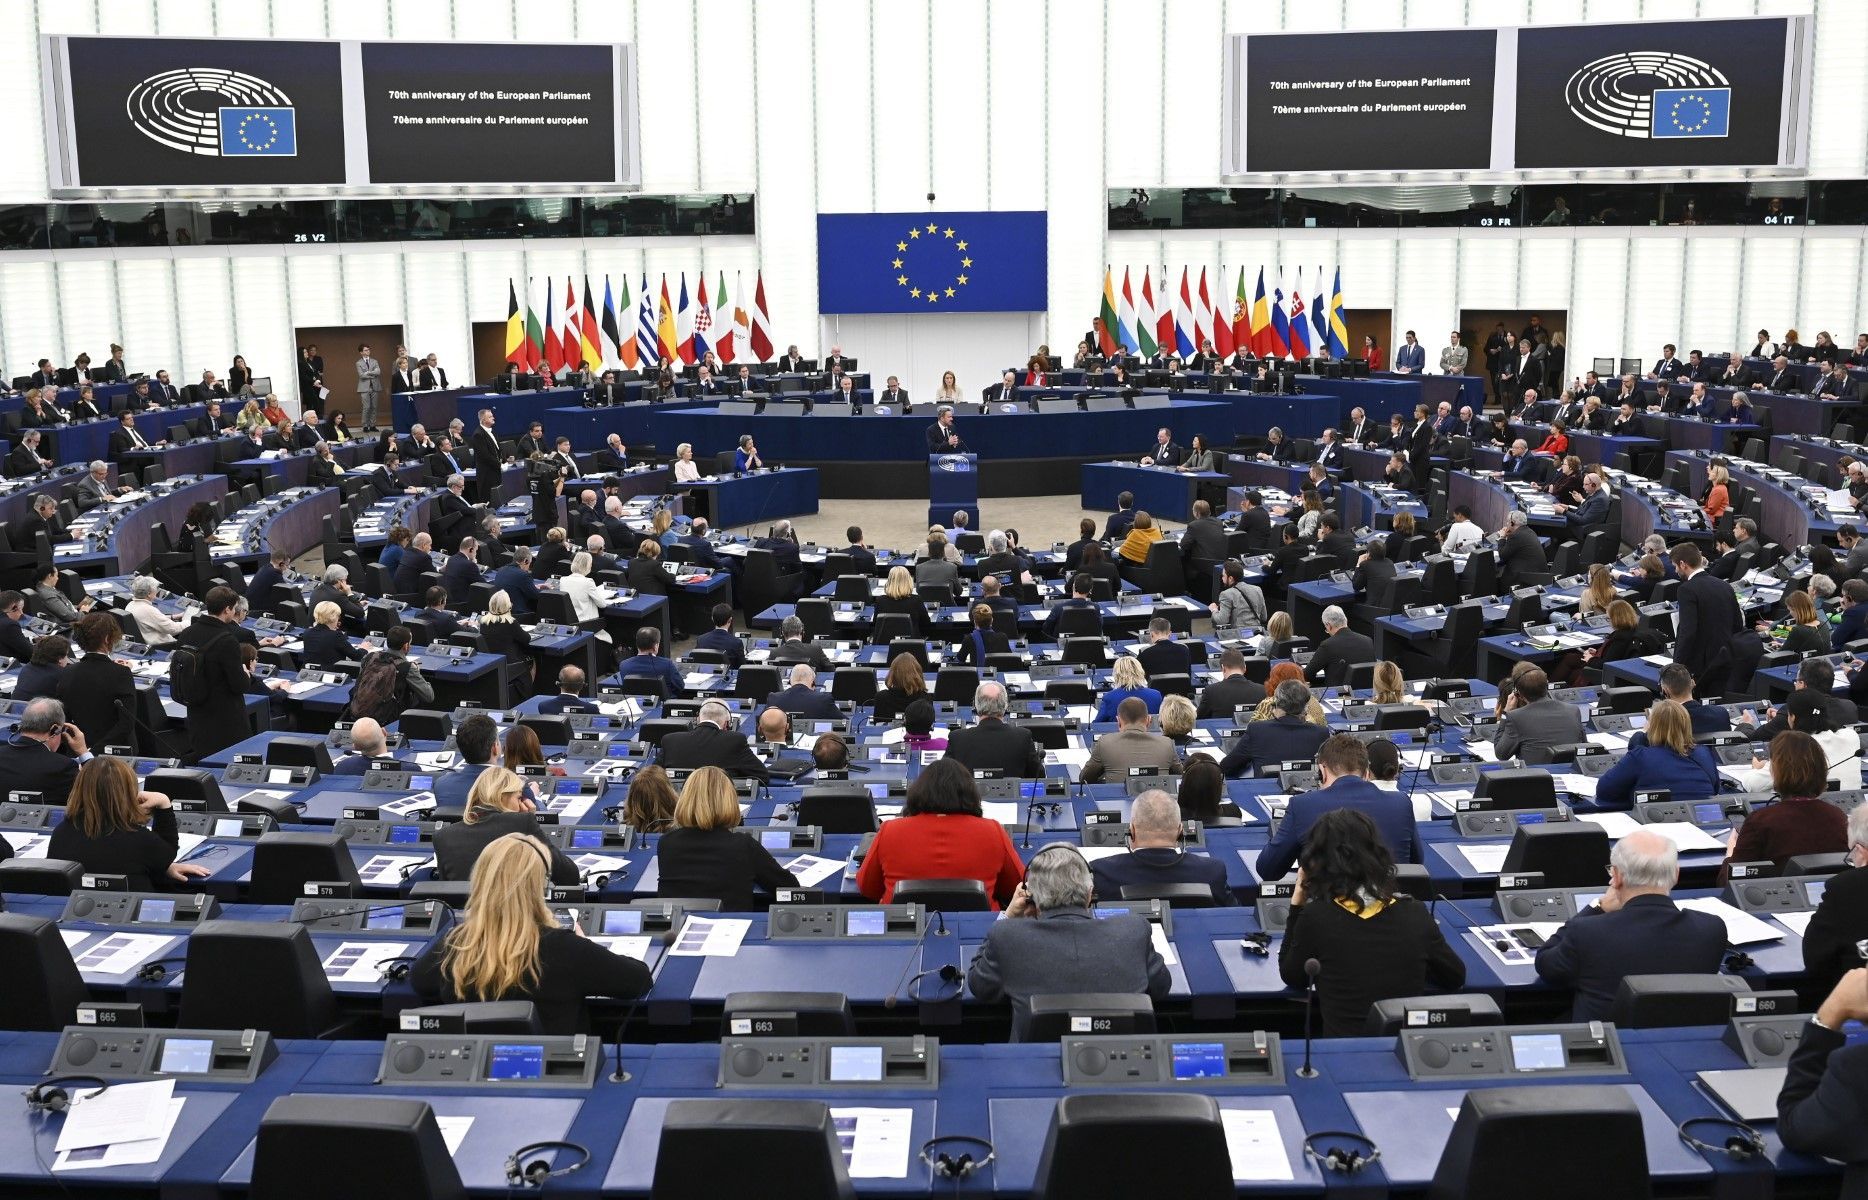 البرلمان الأوروبي يعلن روسيا "دولة راعية للإرهاب"